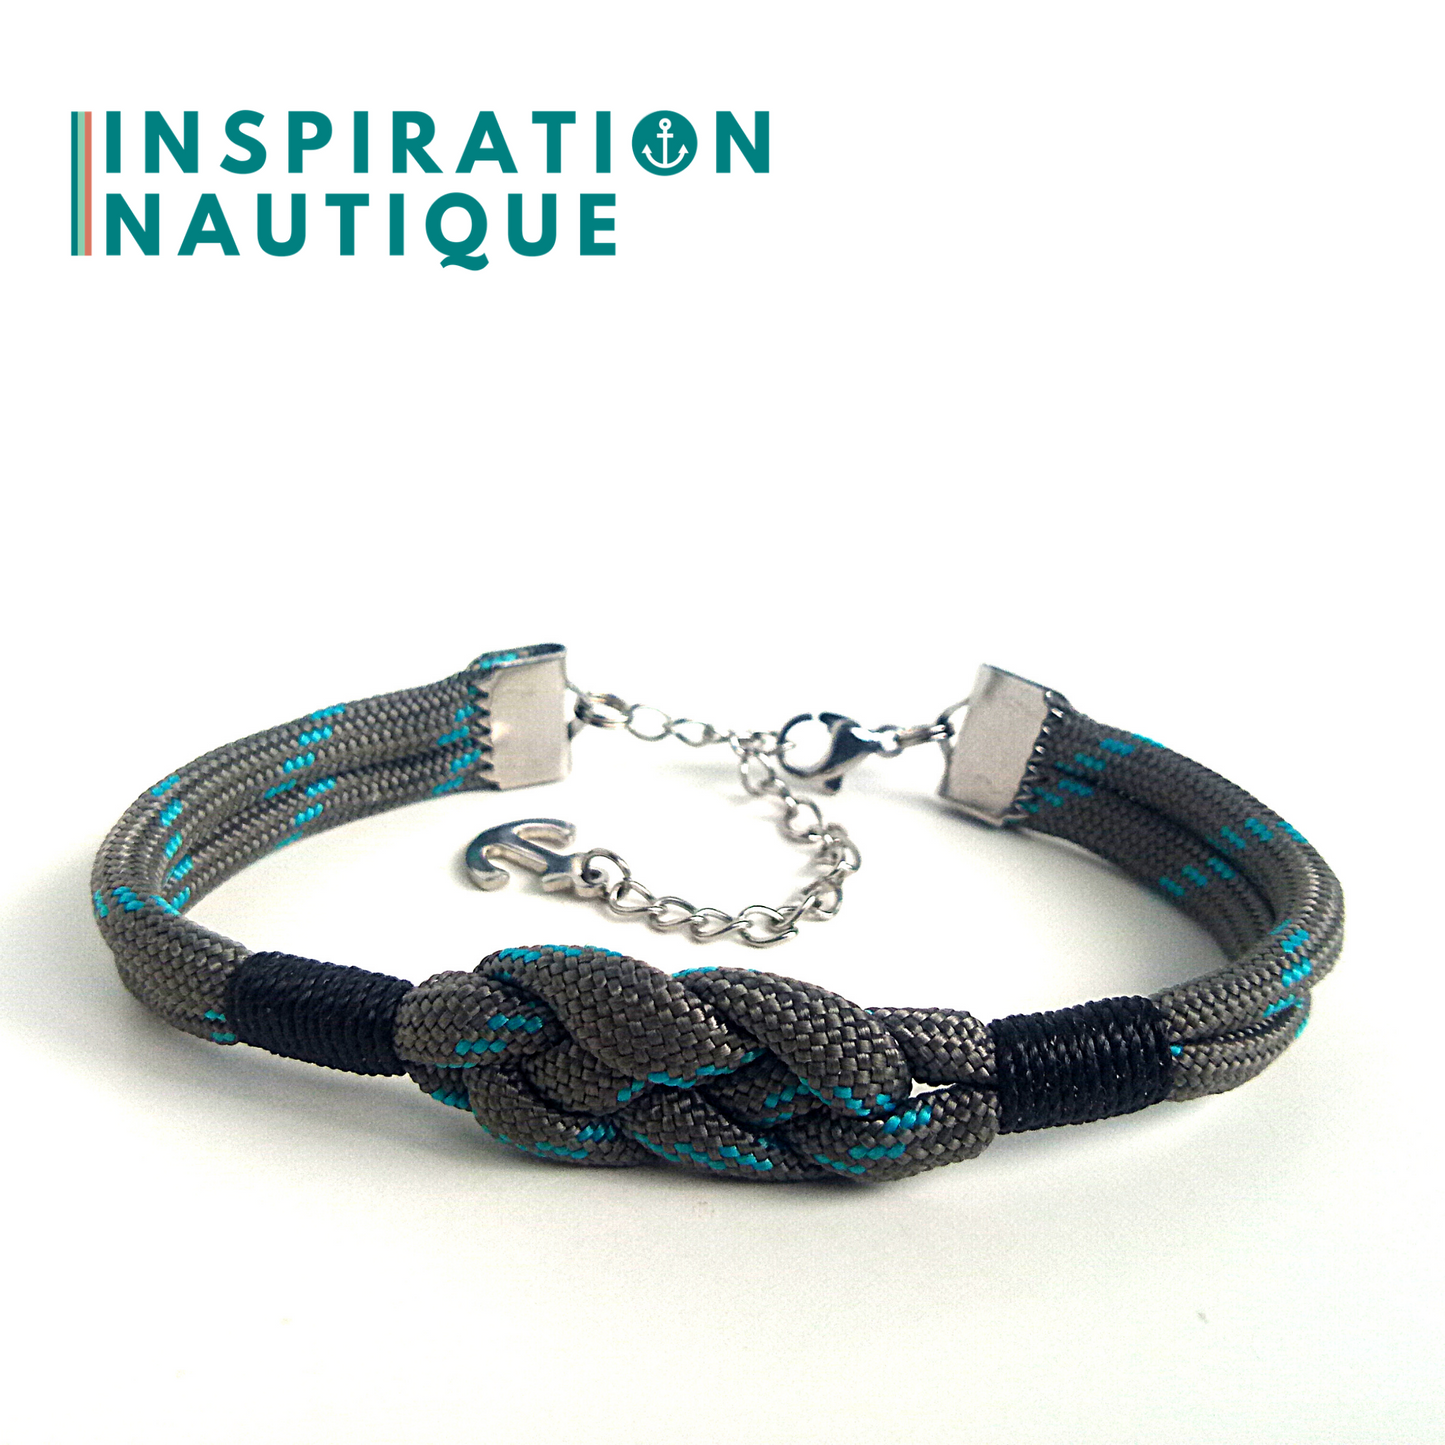 Bracelet marin avec noeud de carrick simple, en paracorde 550 et acier inoxydable, Gris avec traceur turquoise, Medium